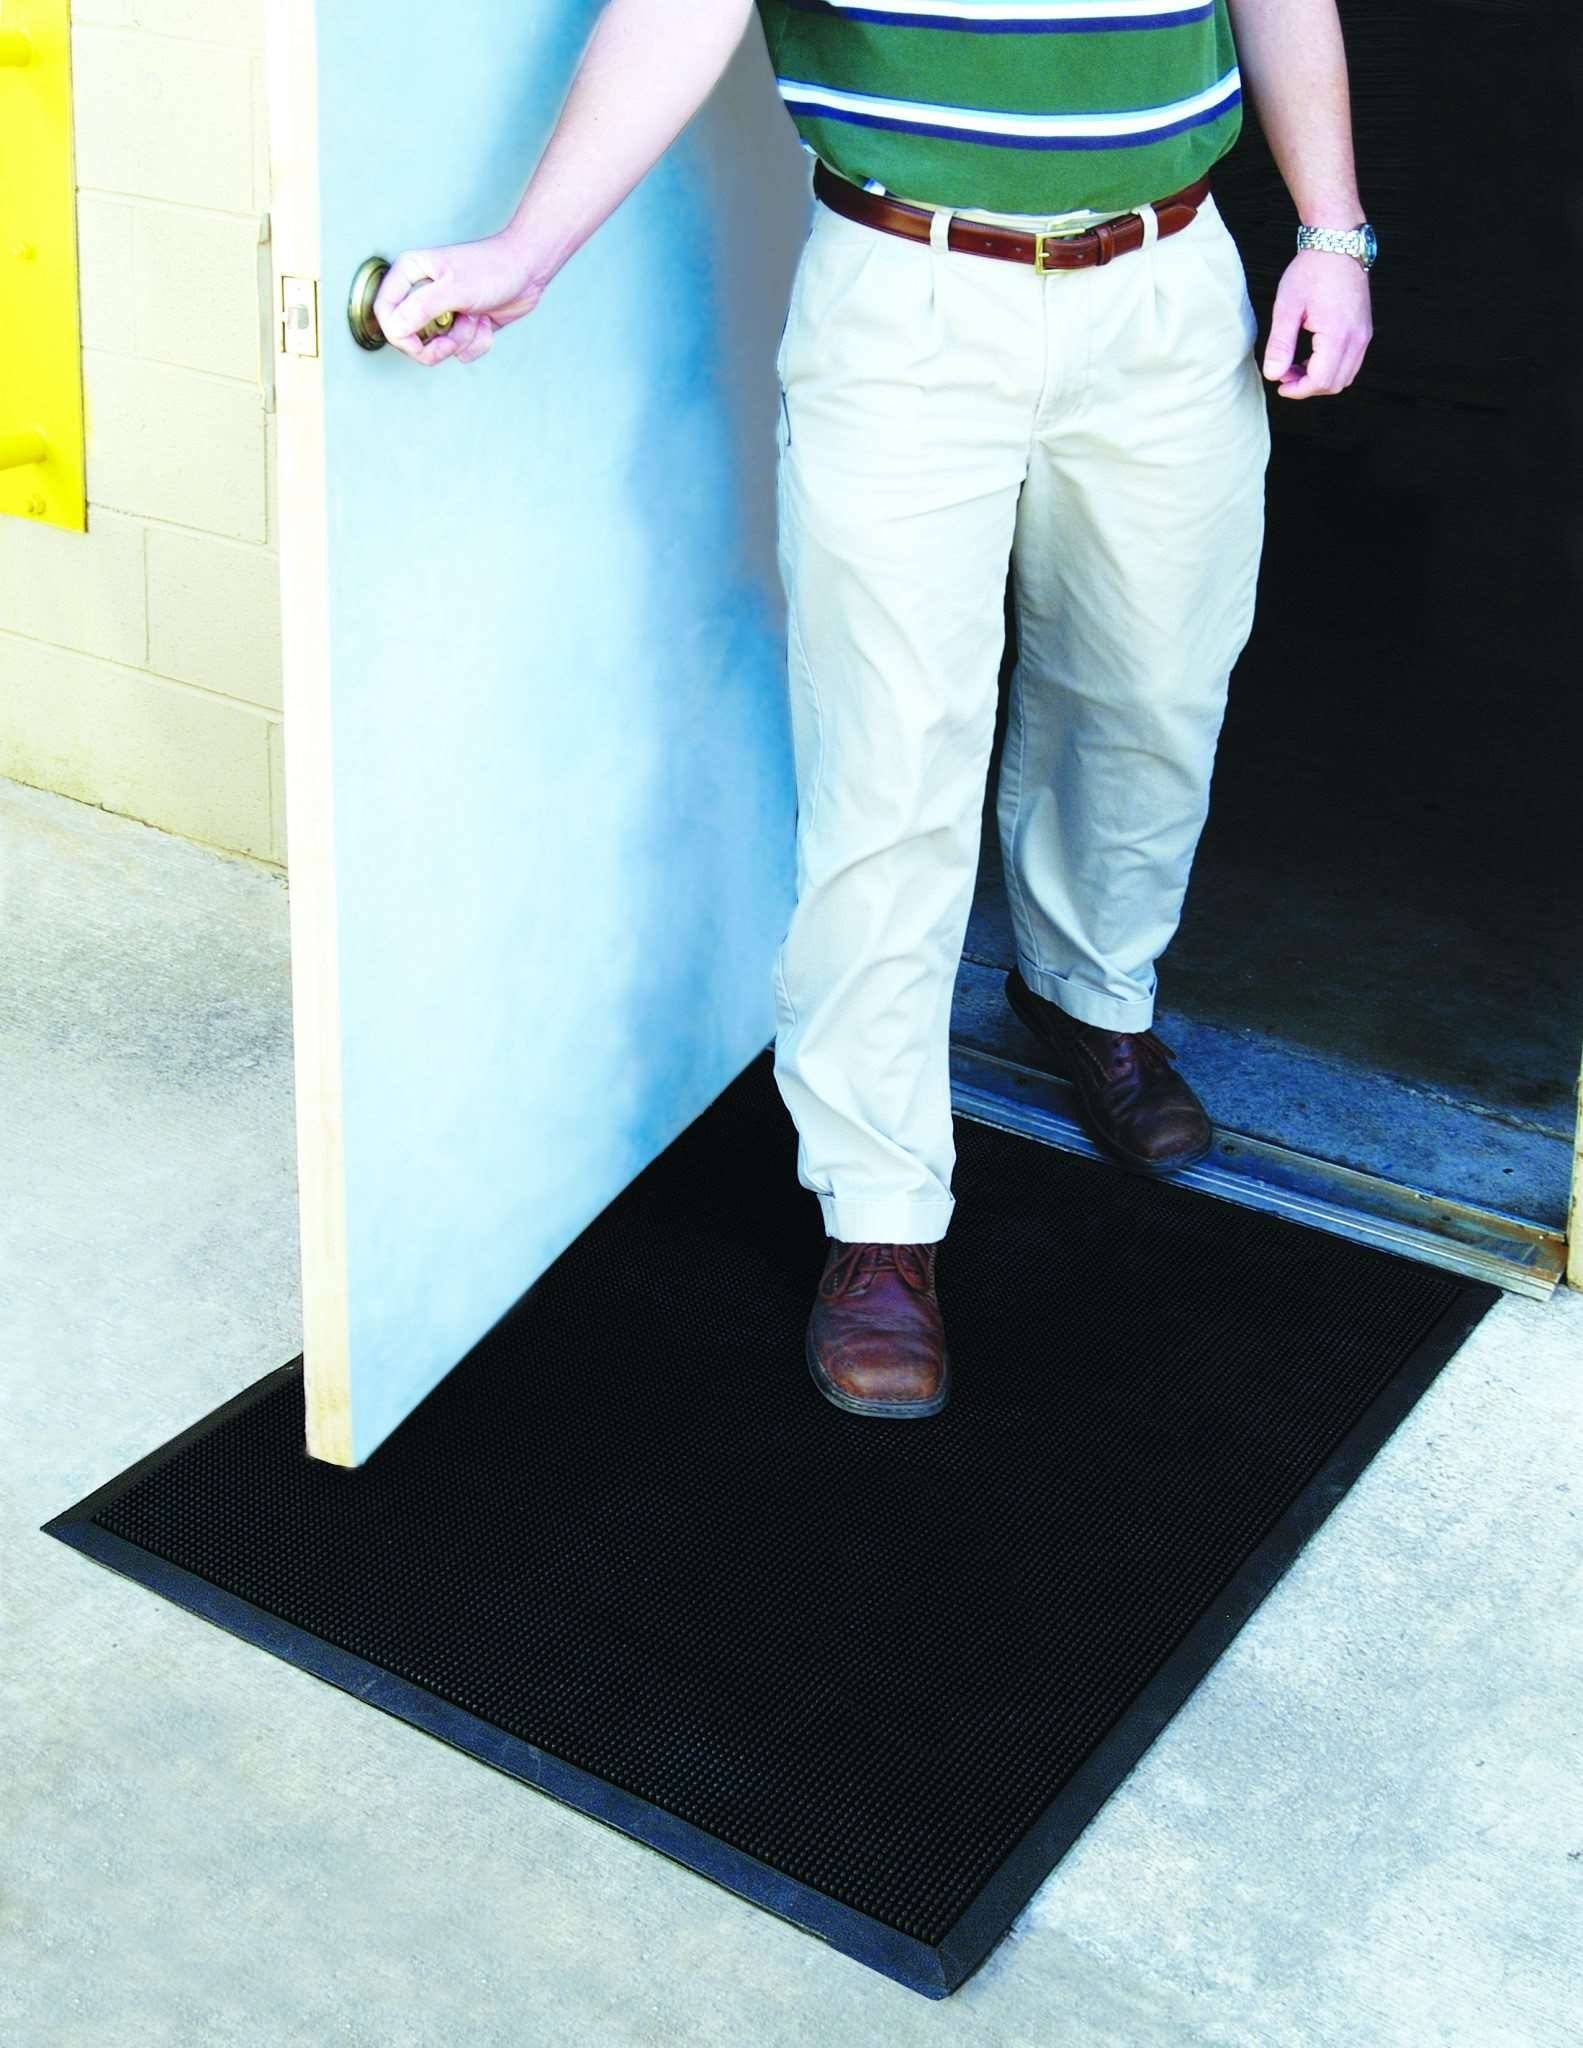 Fingertip, Outdoor Scraping Rubber Doormat